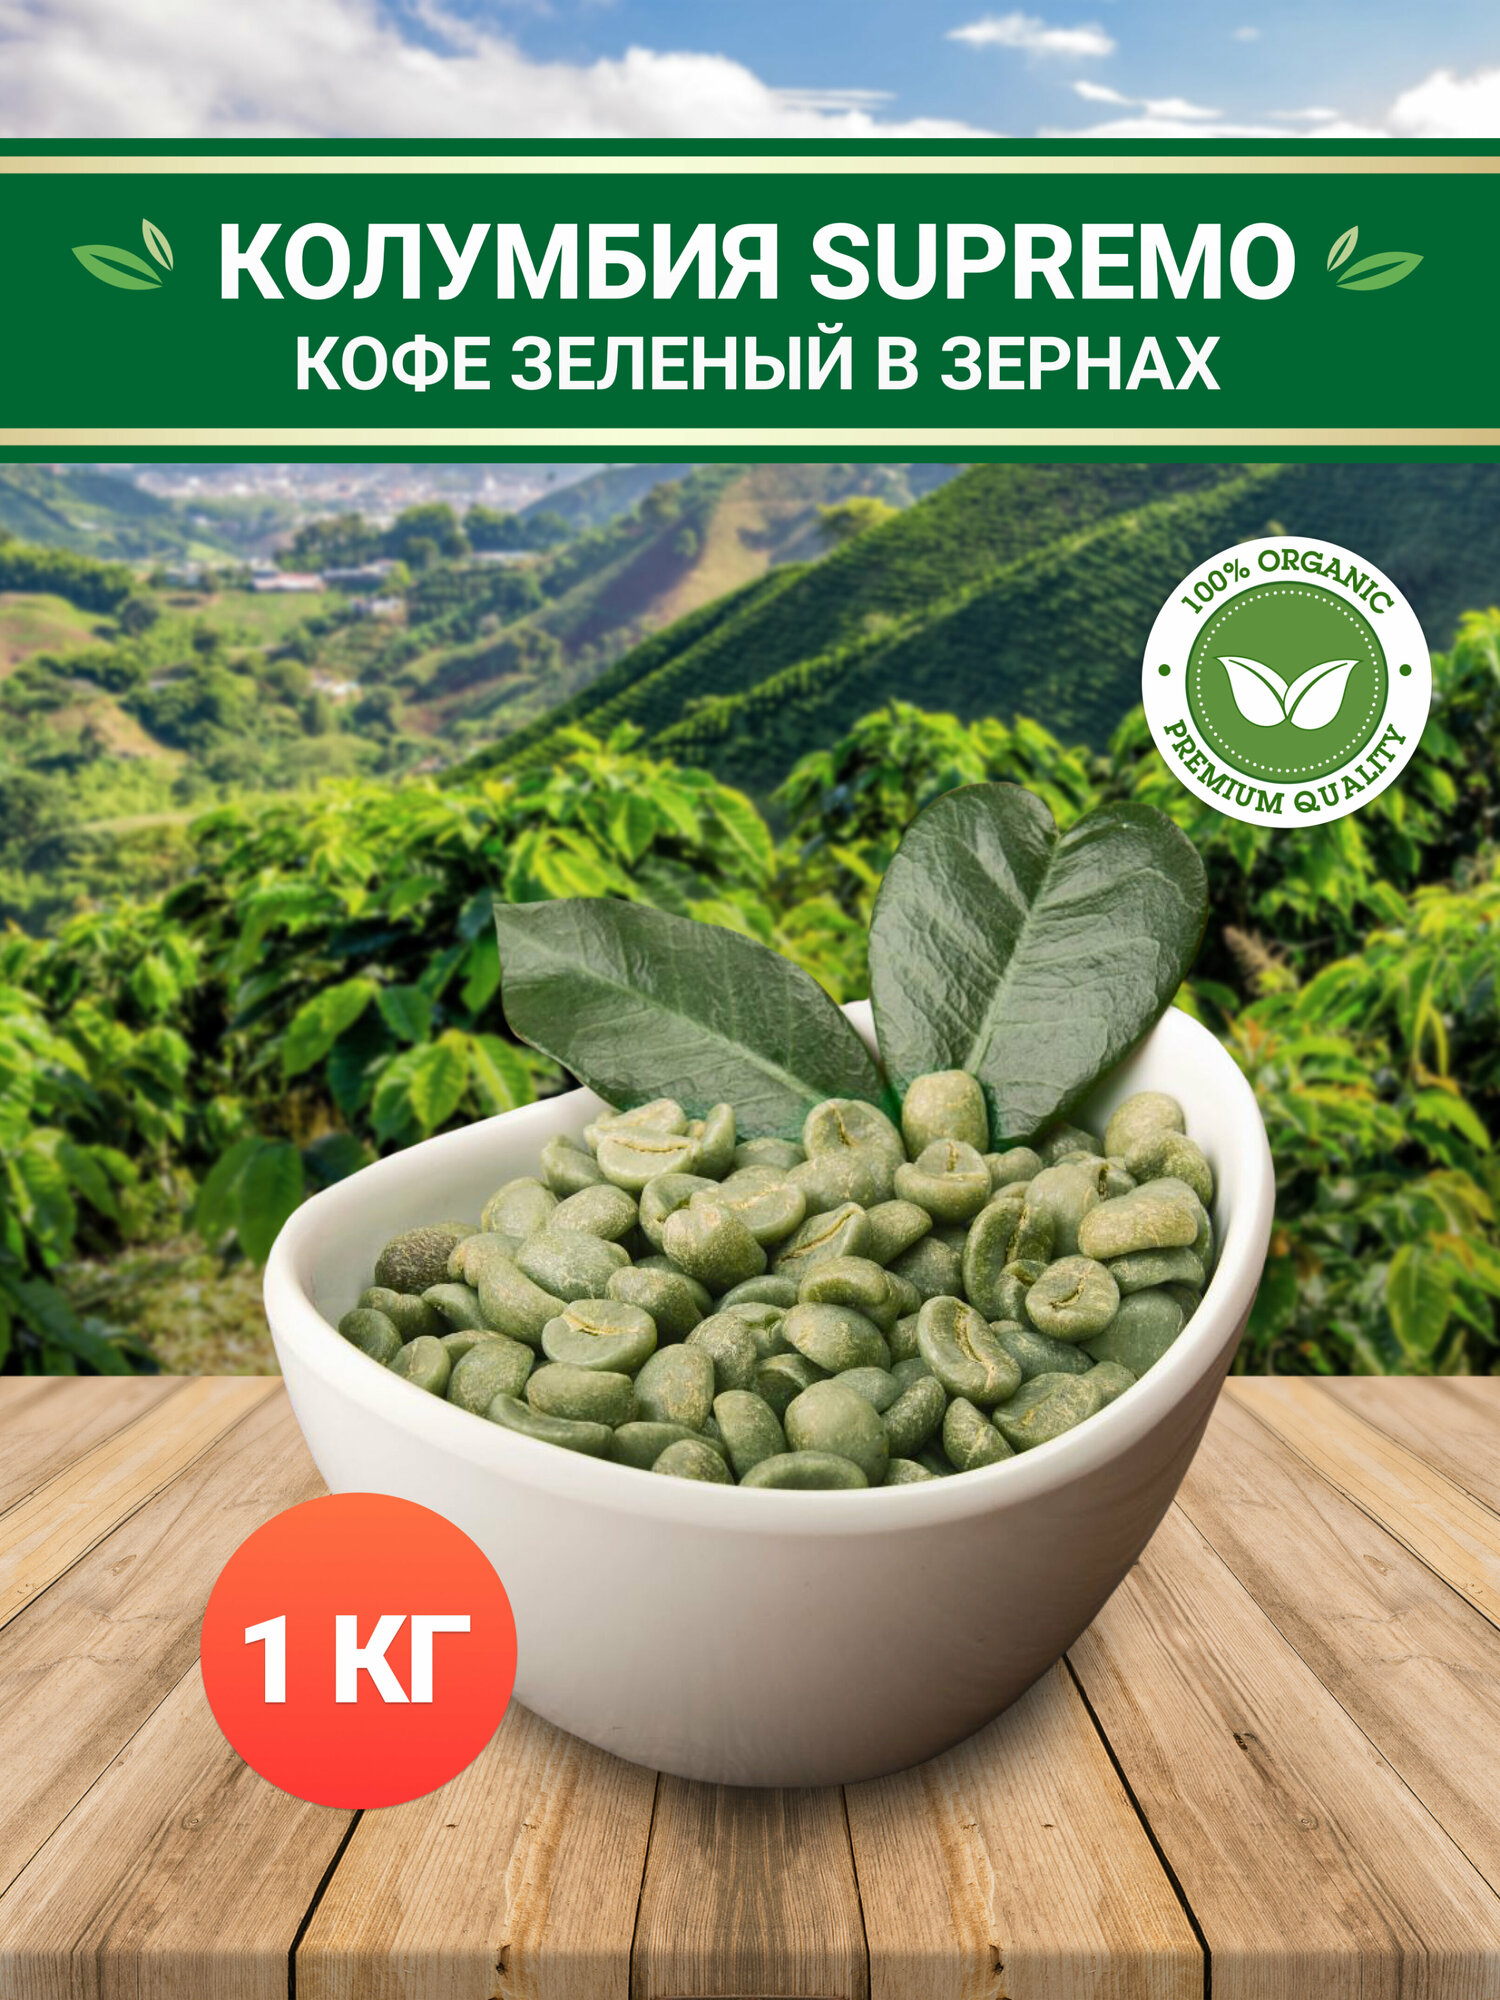 Зеленый кофе арабика Колумбия Супремо (Colombia Supremo) 17/18 TC в зернах без обжарки - 1 кг / 1000 грамм. Необжаренный кофе в зернах для похудения